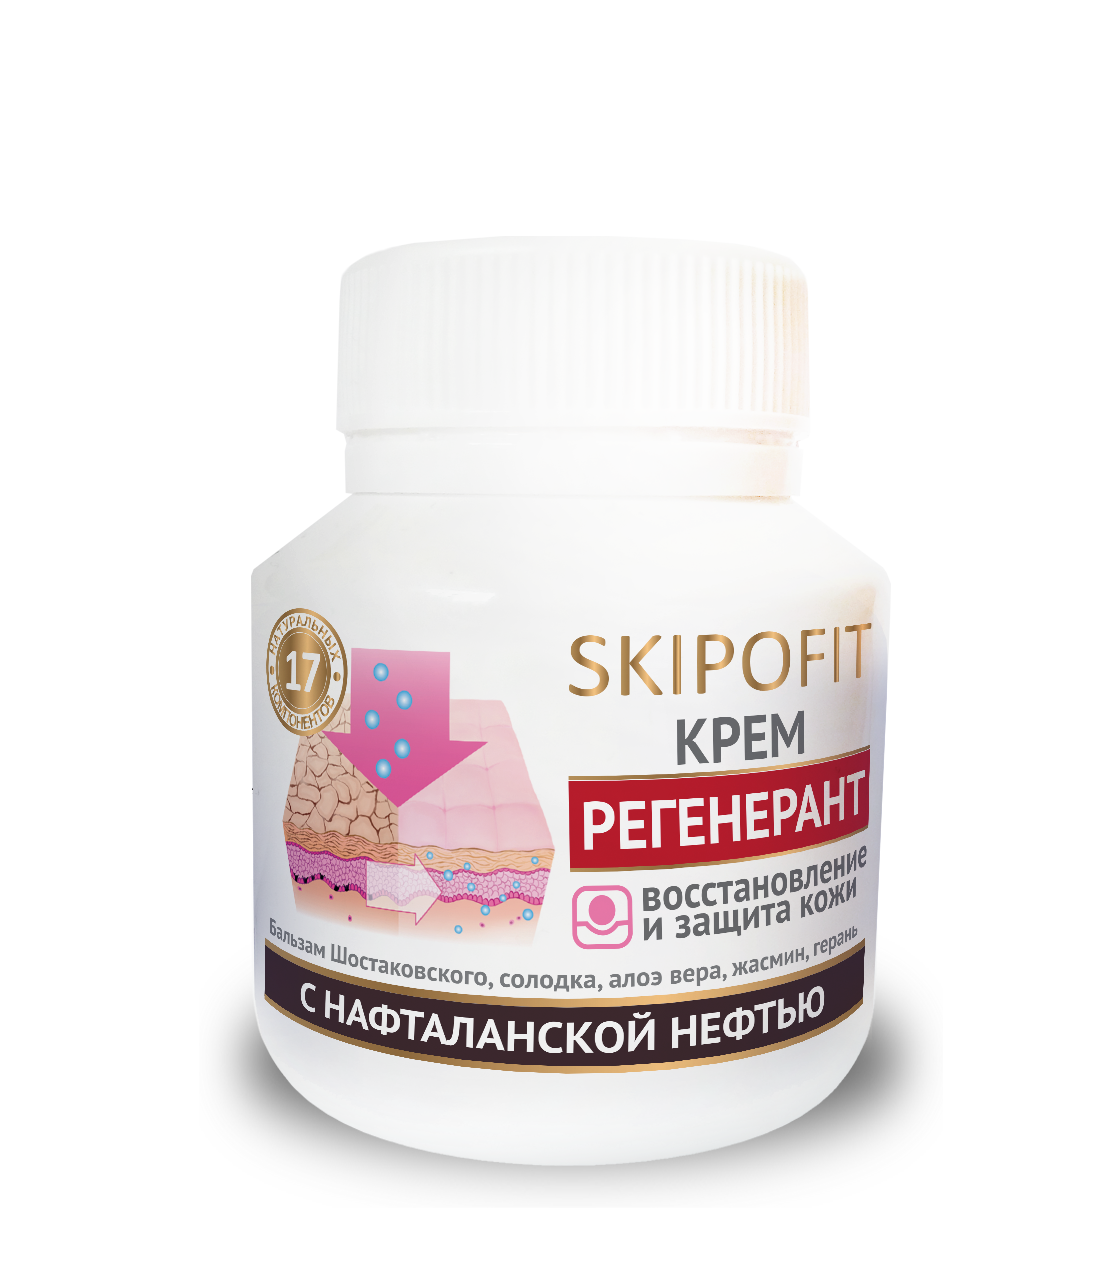  «SKIPOFIT Регенерант - крем регенерирующий с нафталанской нефтью для проблемной кожи 90 мл НИИ Натуротерапии» - Уход за телом